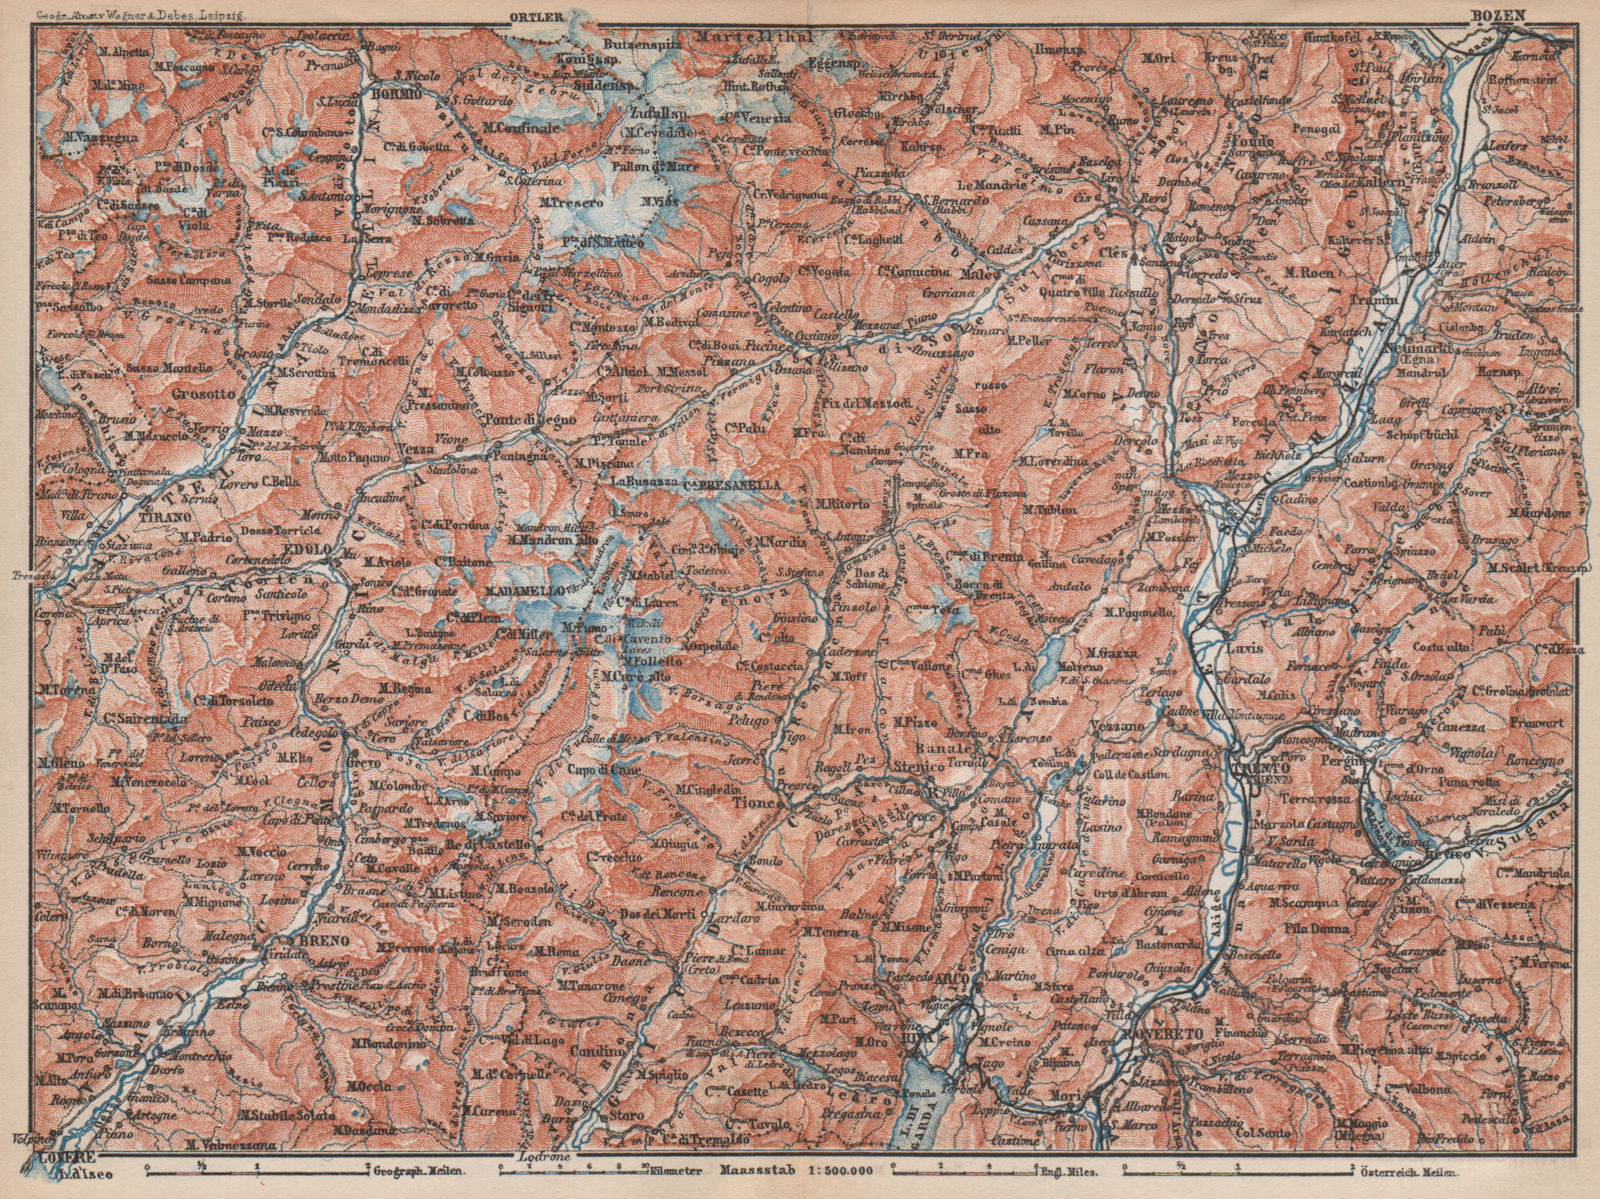 TRENTINO-ALTO ADIGE. Bolzano Bormio S. Caterina Aprica Campiglio mappa 1896